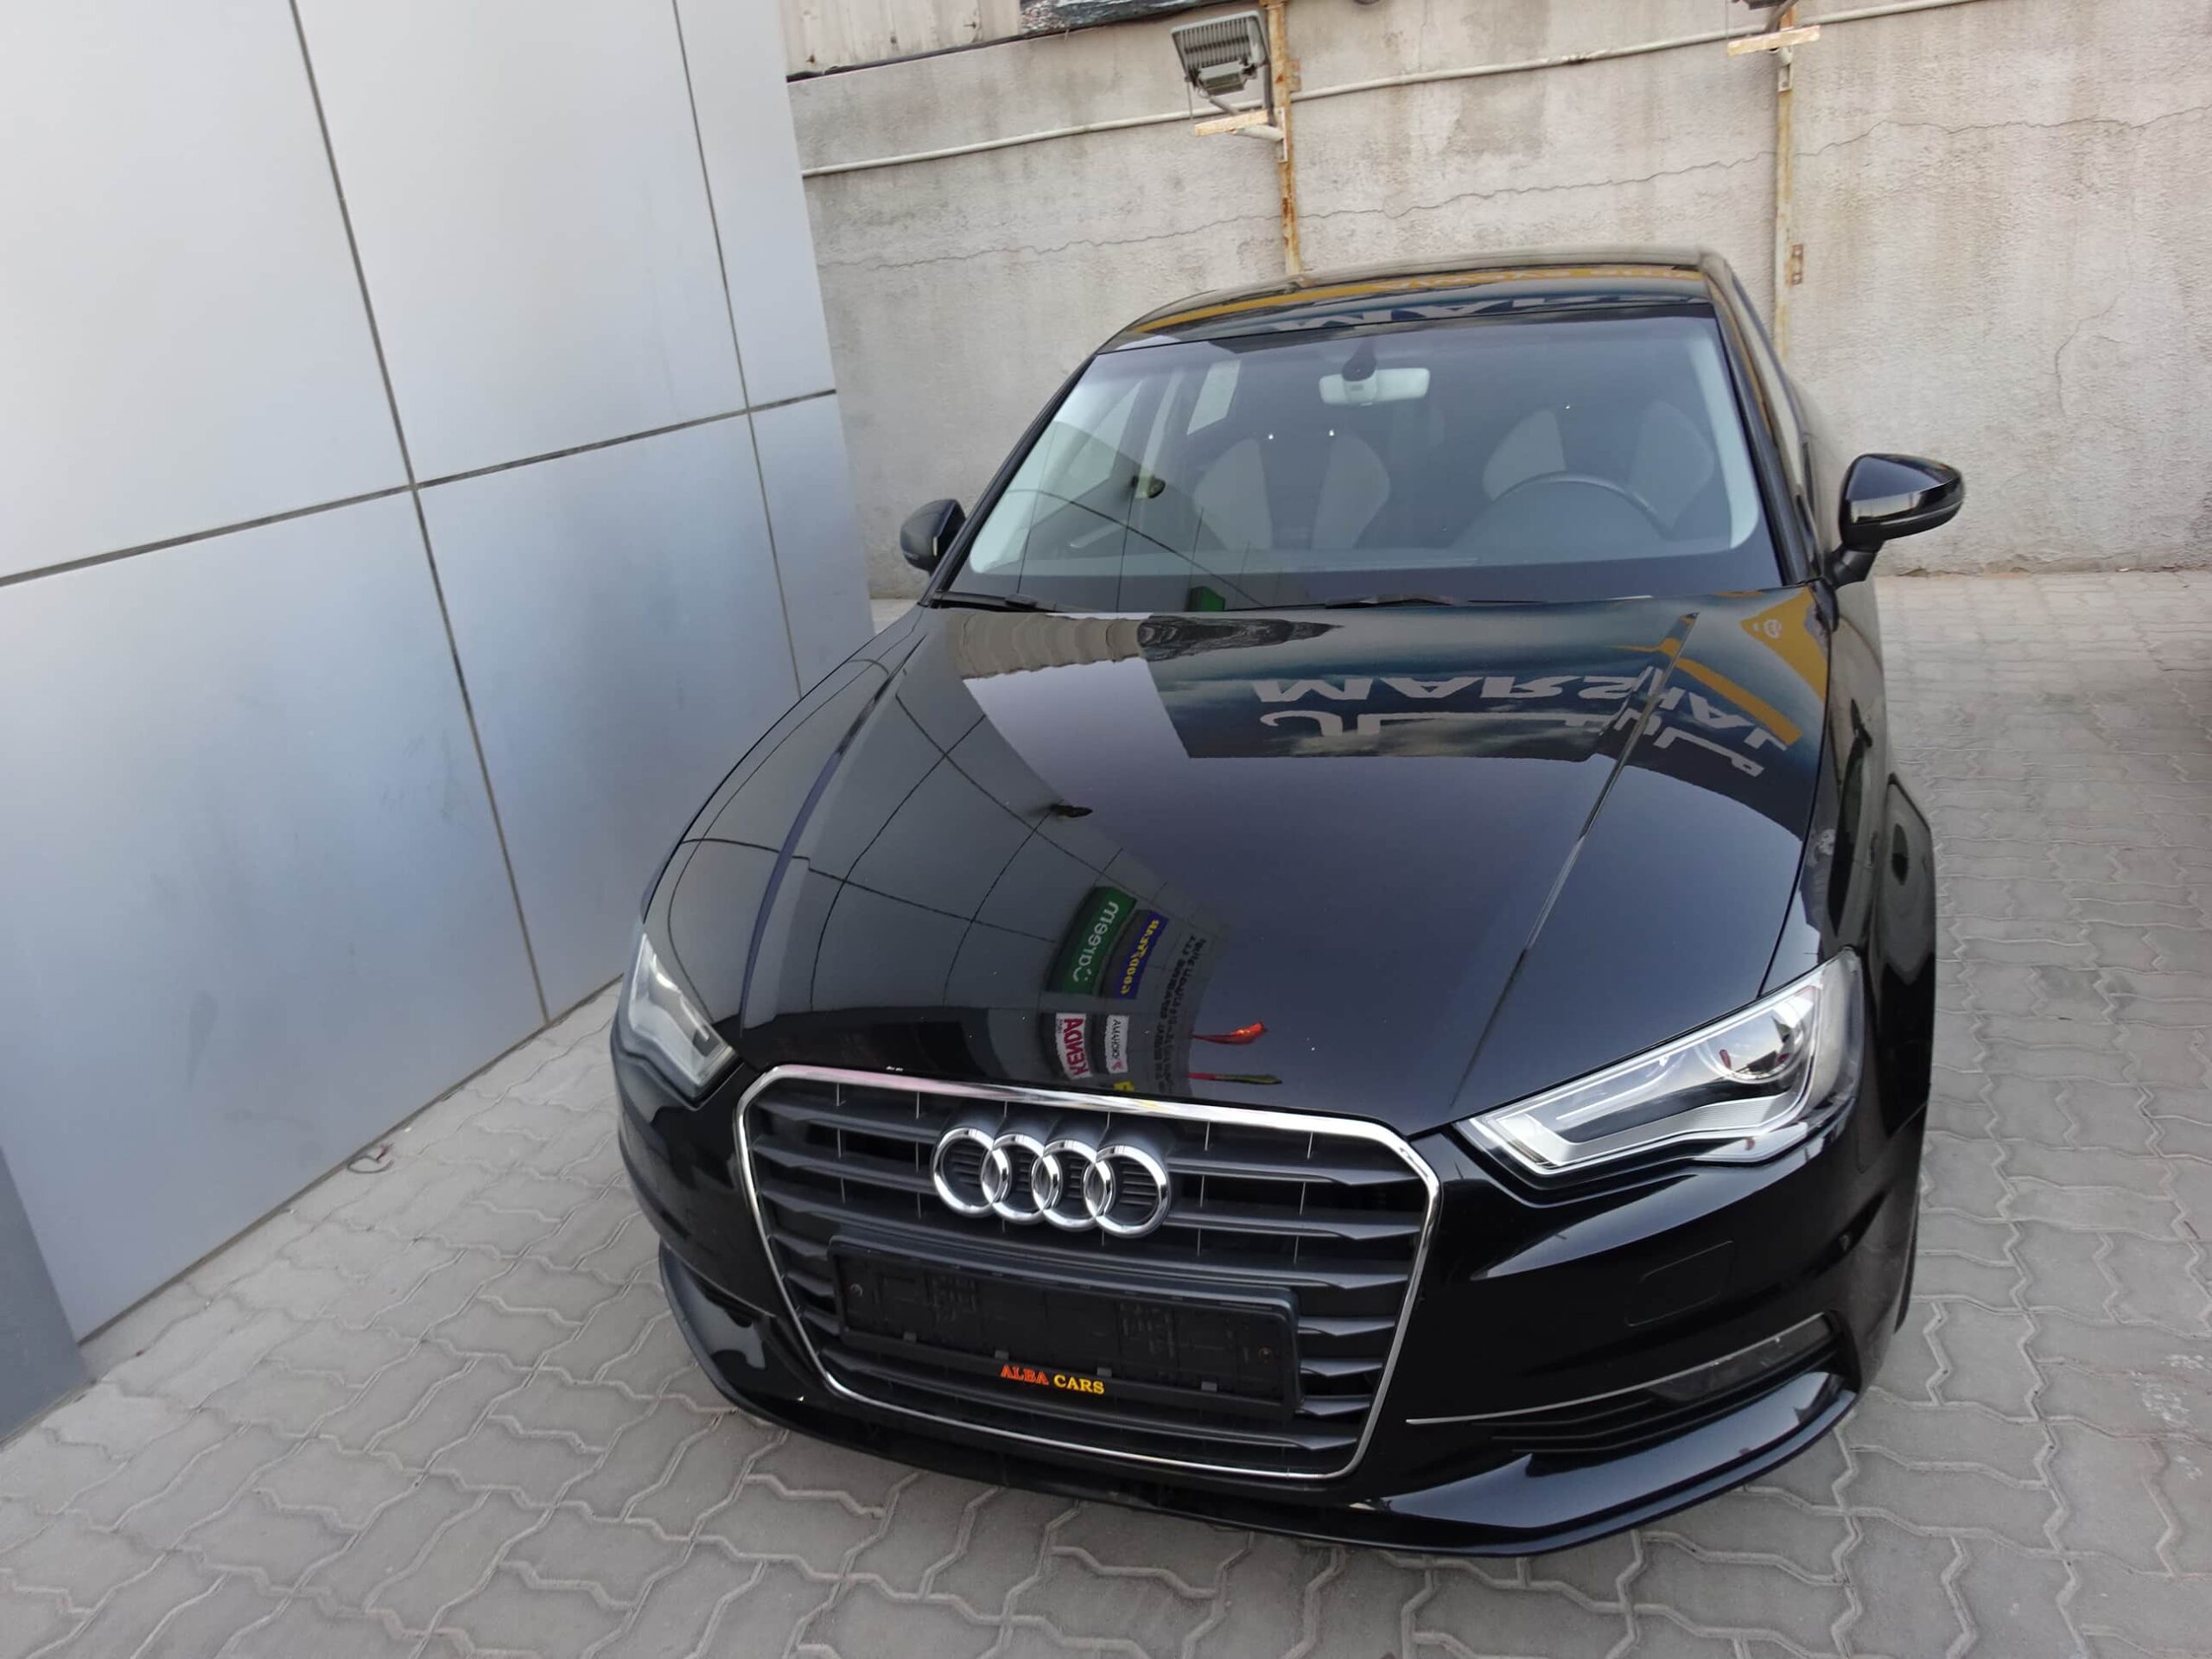 Audi garage in Dubai